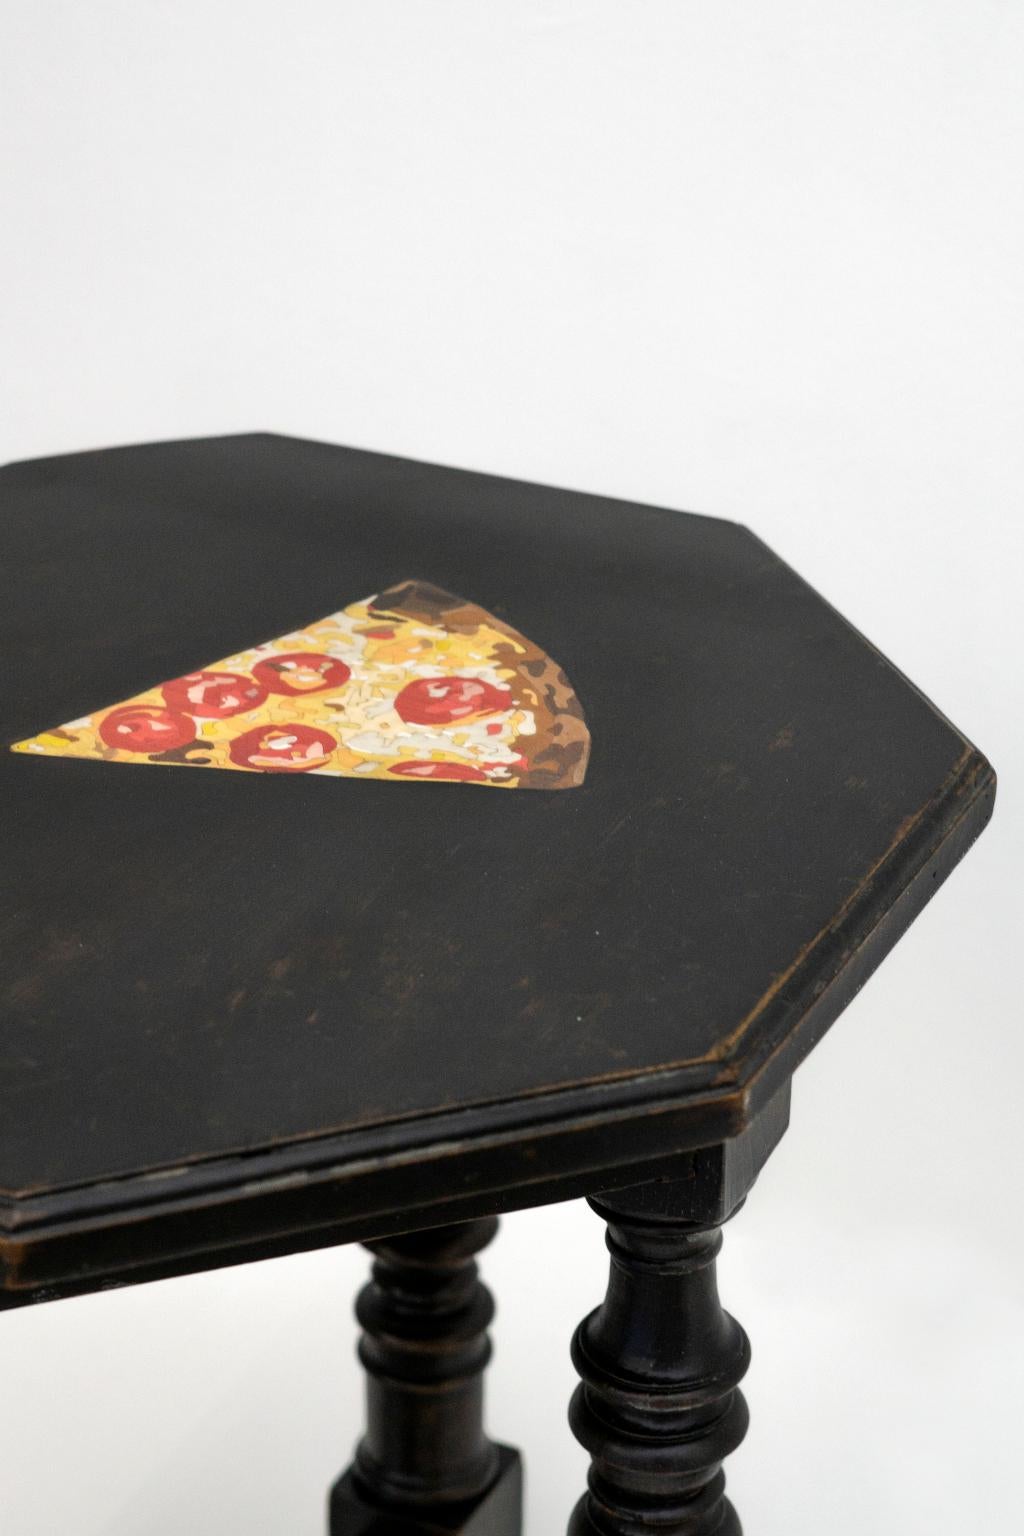 Pizza
La pizza est née de l'idée de l'artiste Marcantonio Malerba de revisiter les pizzas anciennes arricchendoli avec l'intervention de l'intarsio en legno. Dans ce cas, la pizza est réalisée par nos artisans avec différentes pizzas en legno